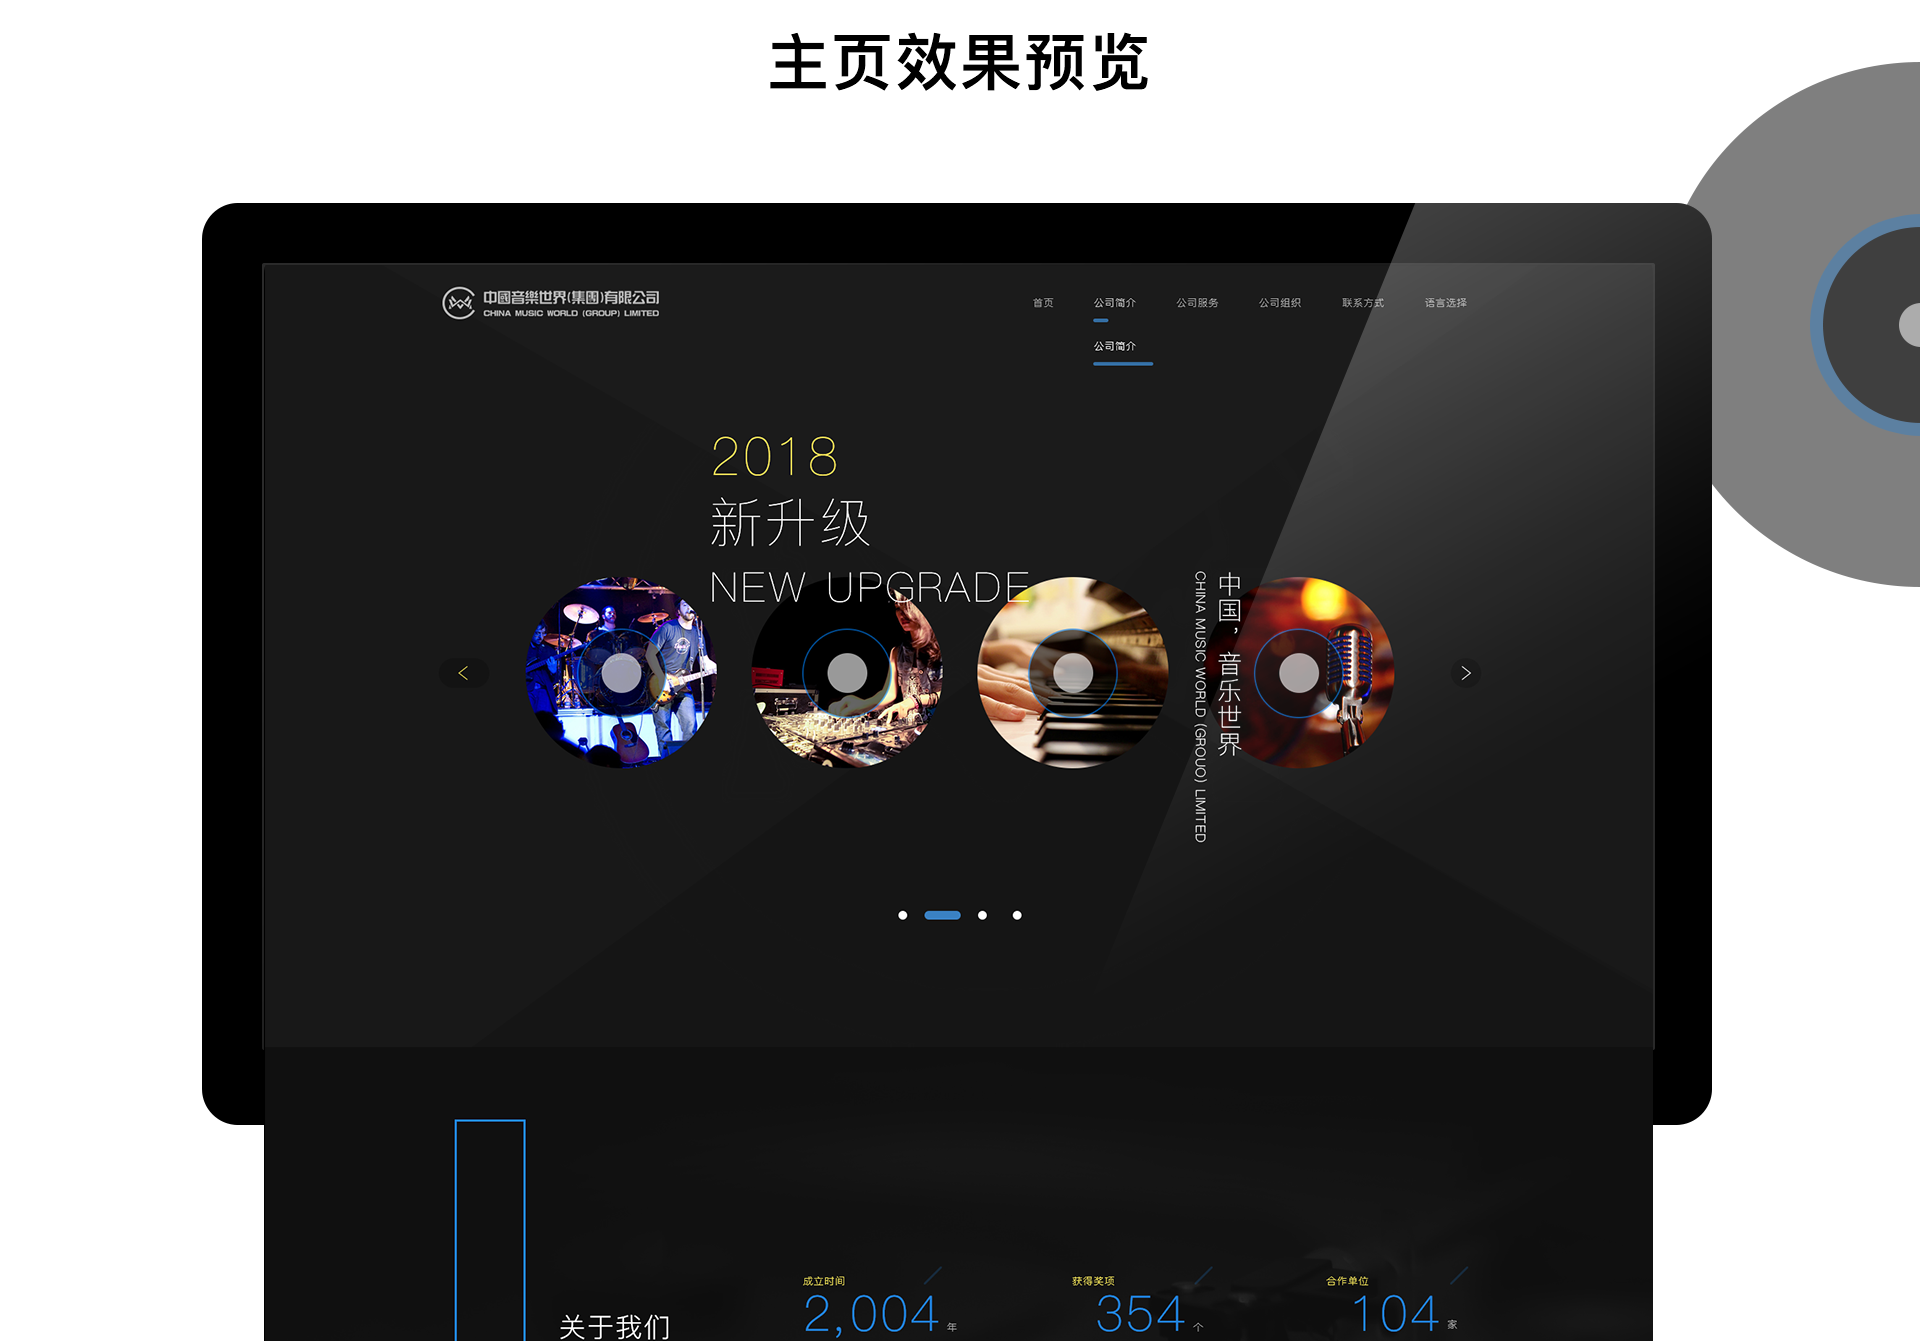 华人音乐网站案例 企业形象一站式服务